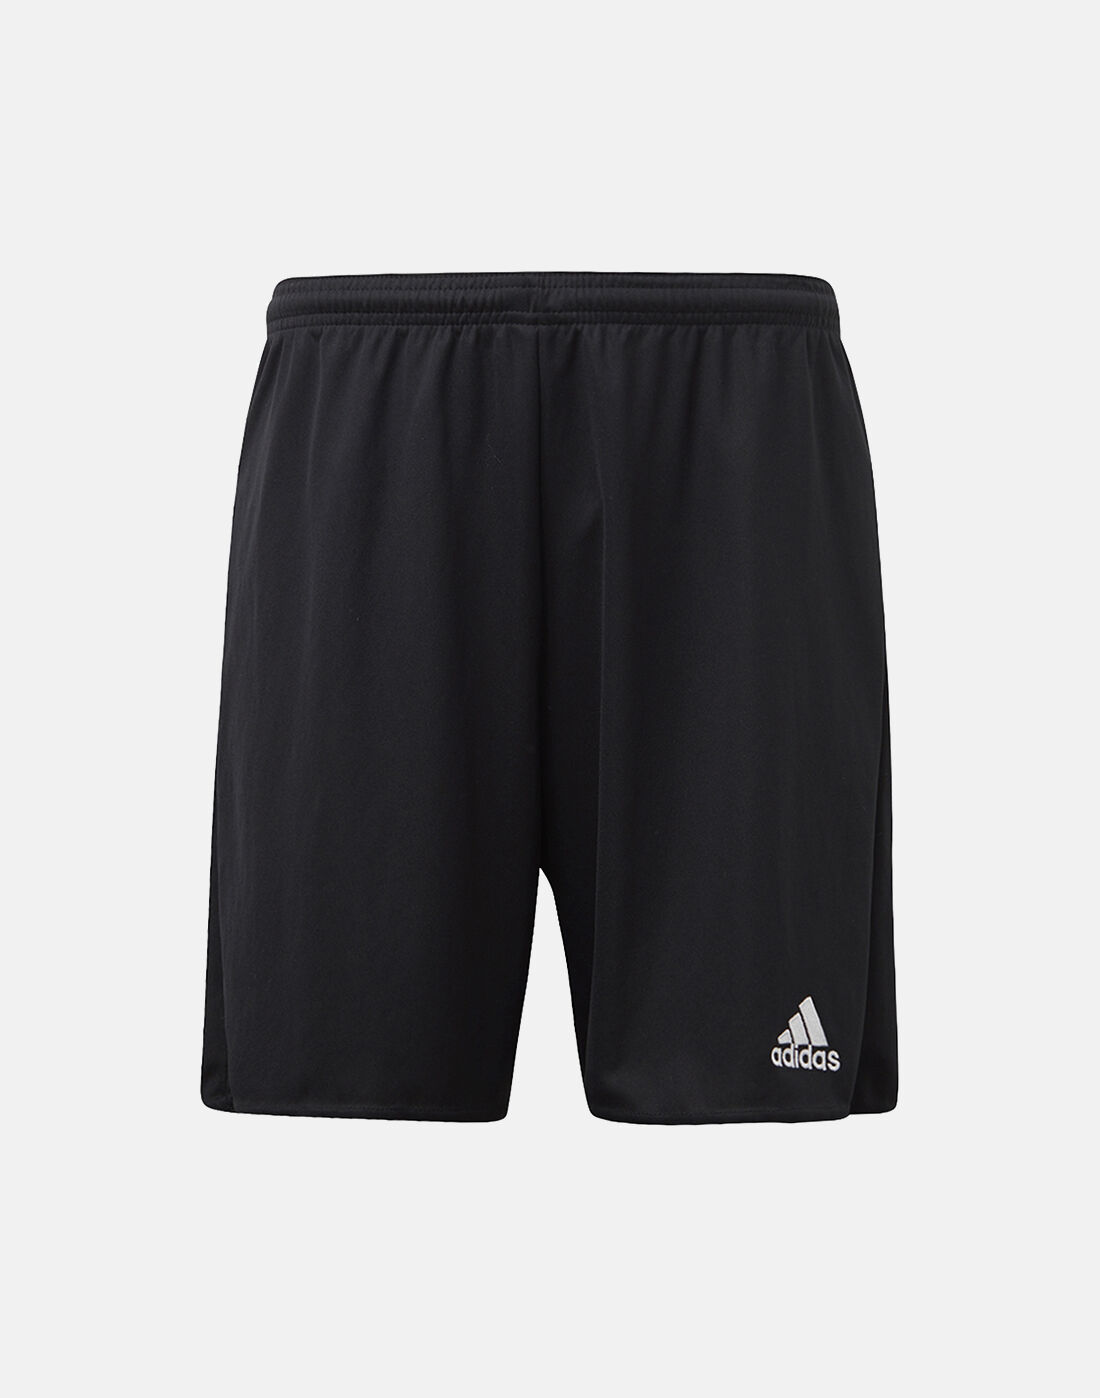 mens black adidas football shorts